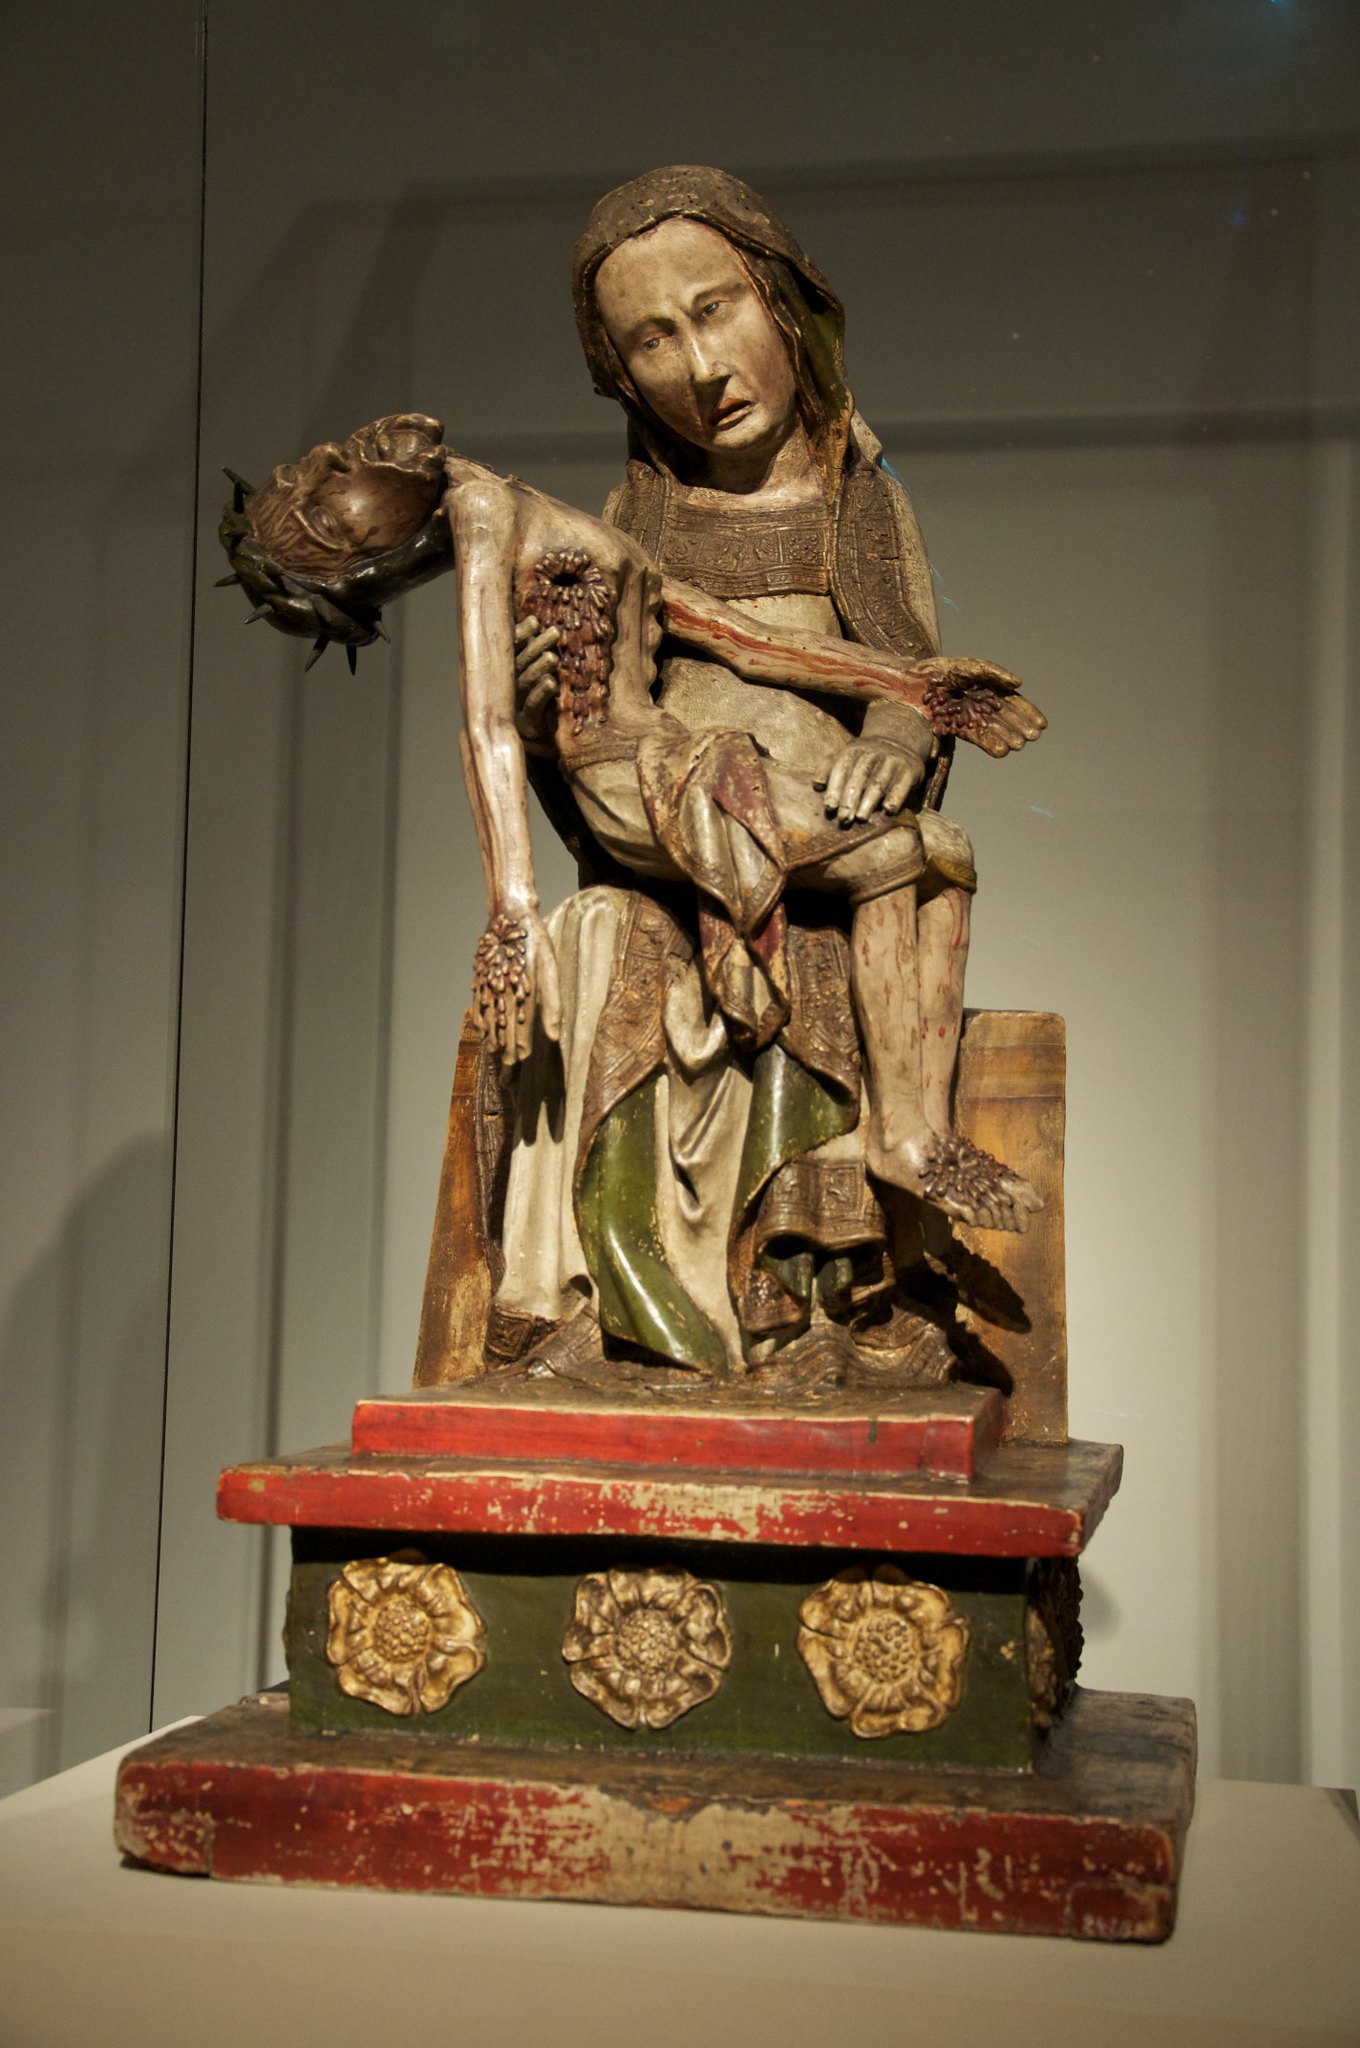 <p><strong>Röttgen Pietà</strong></p><p>Late Medieval Europe</p><p>Bonn, Germany</p><p>1300-1325 CE</p><p>Painted wood</p>